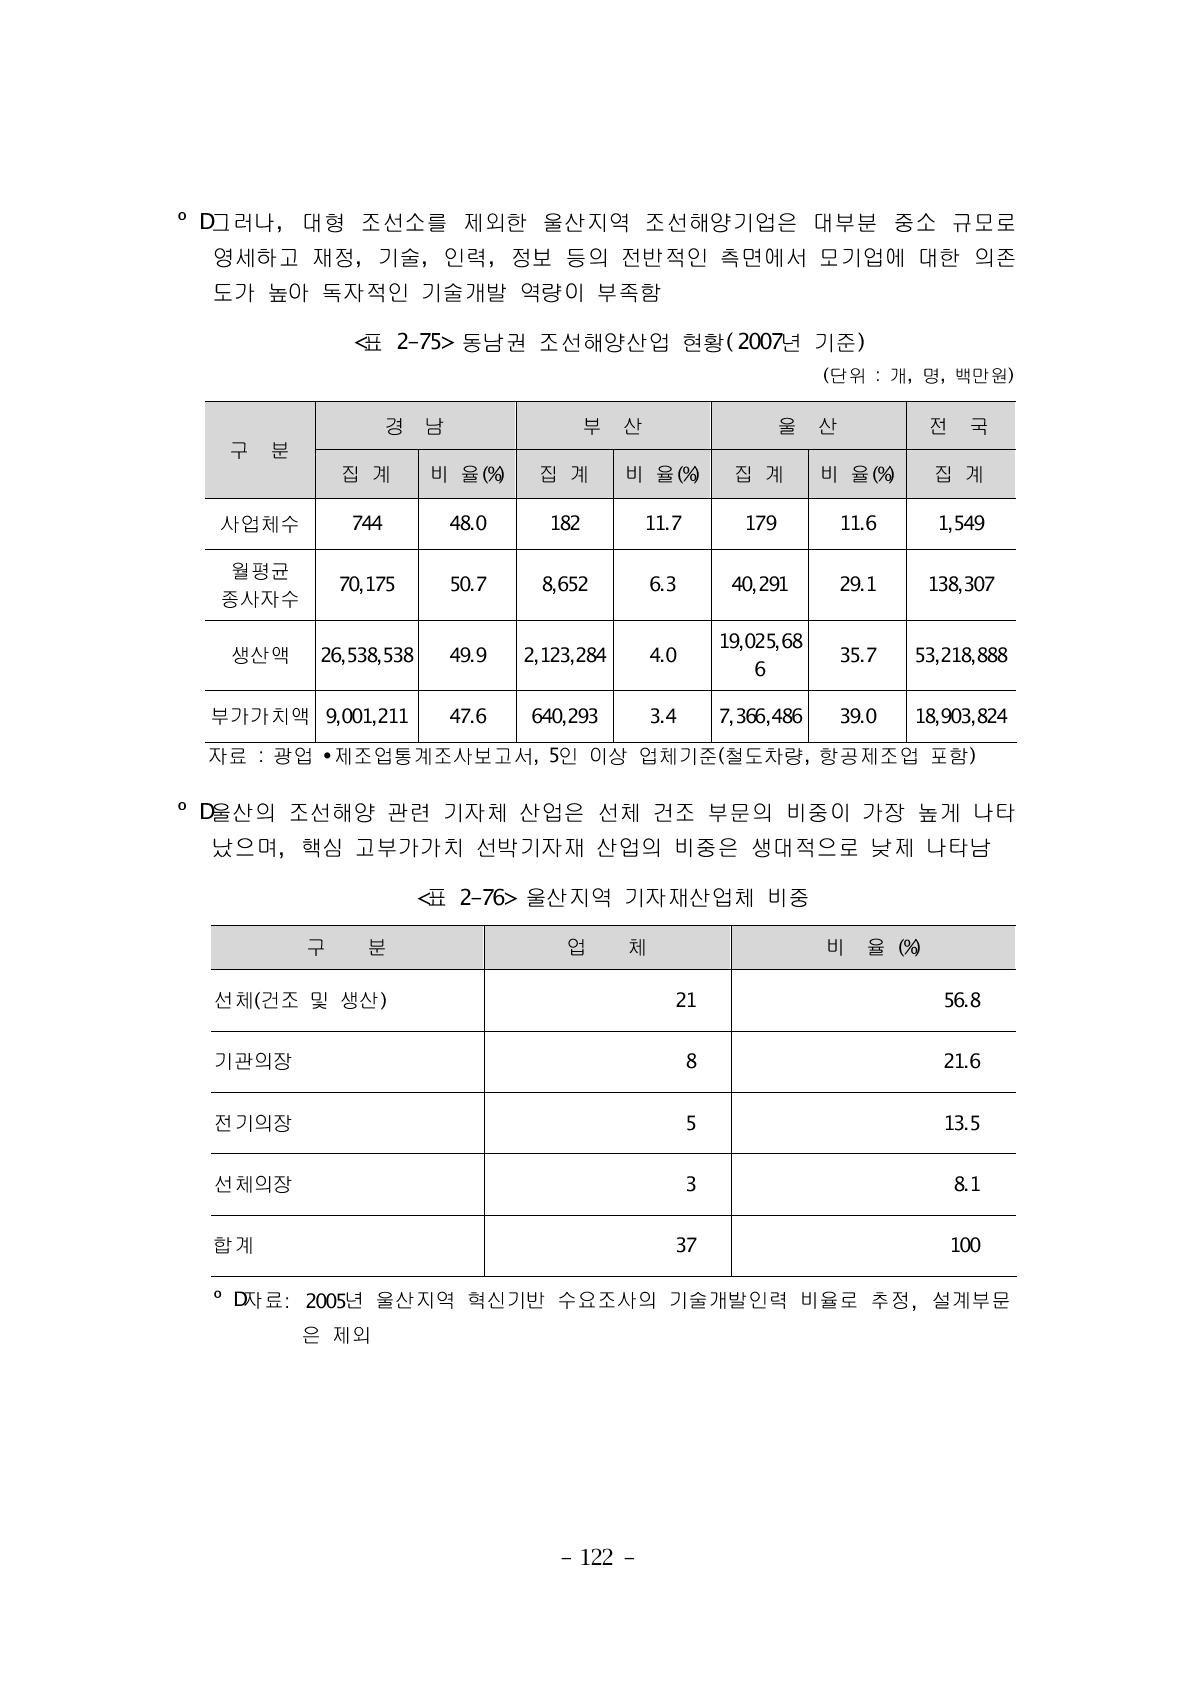 동남권 조선해양산업 현황(2007년 기준)